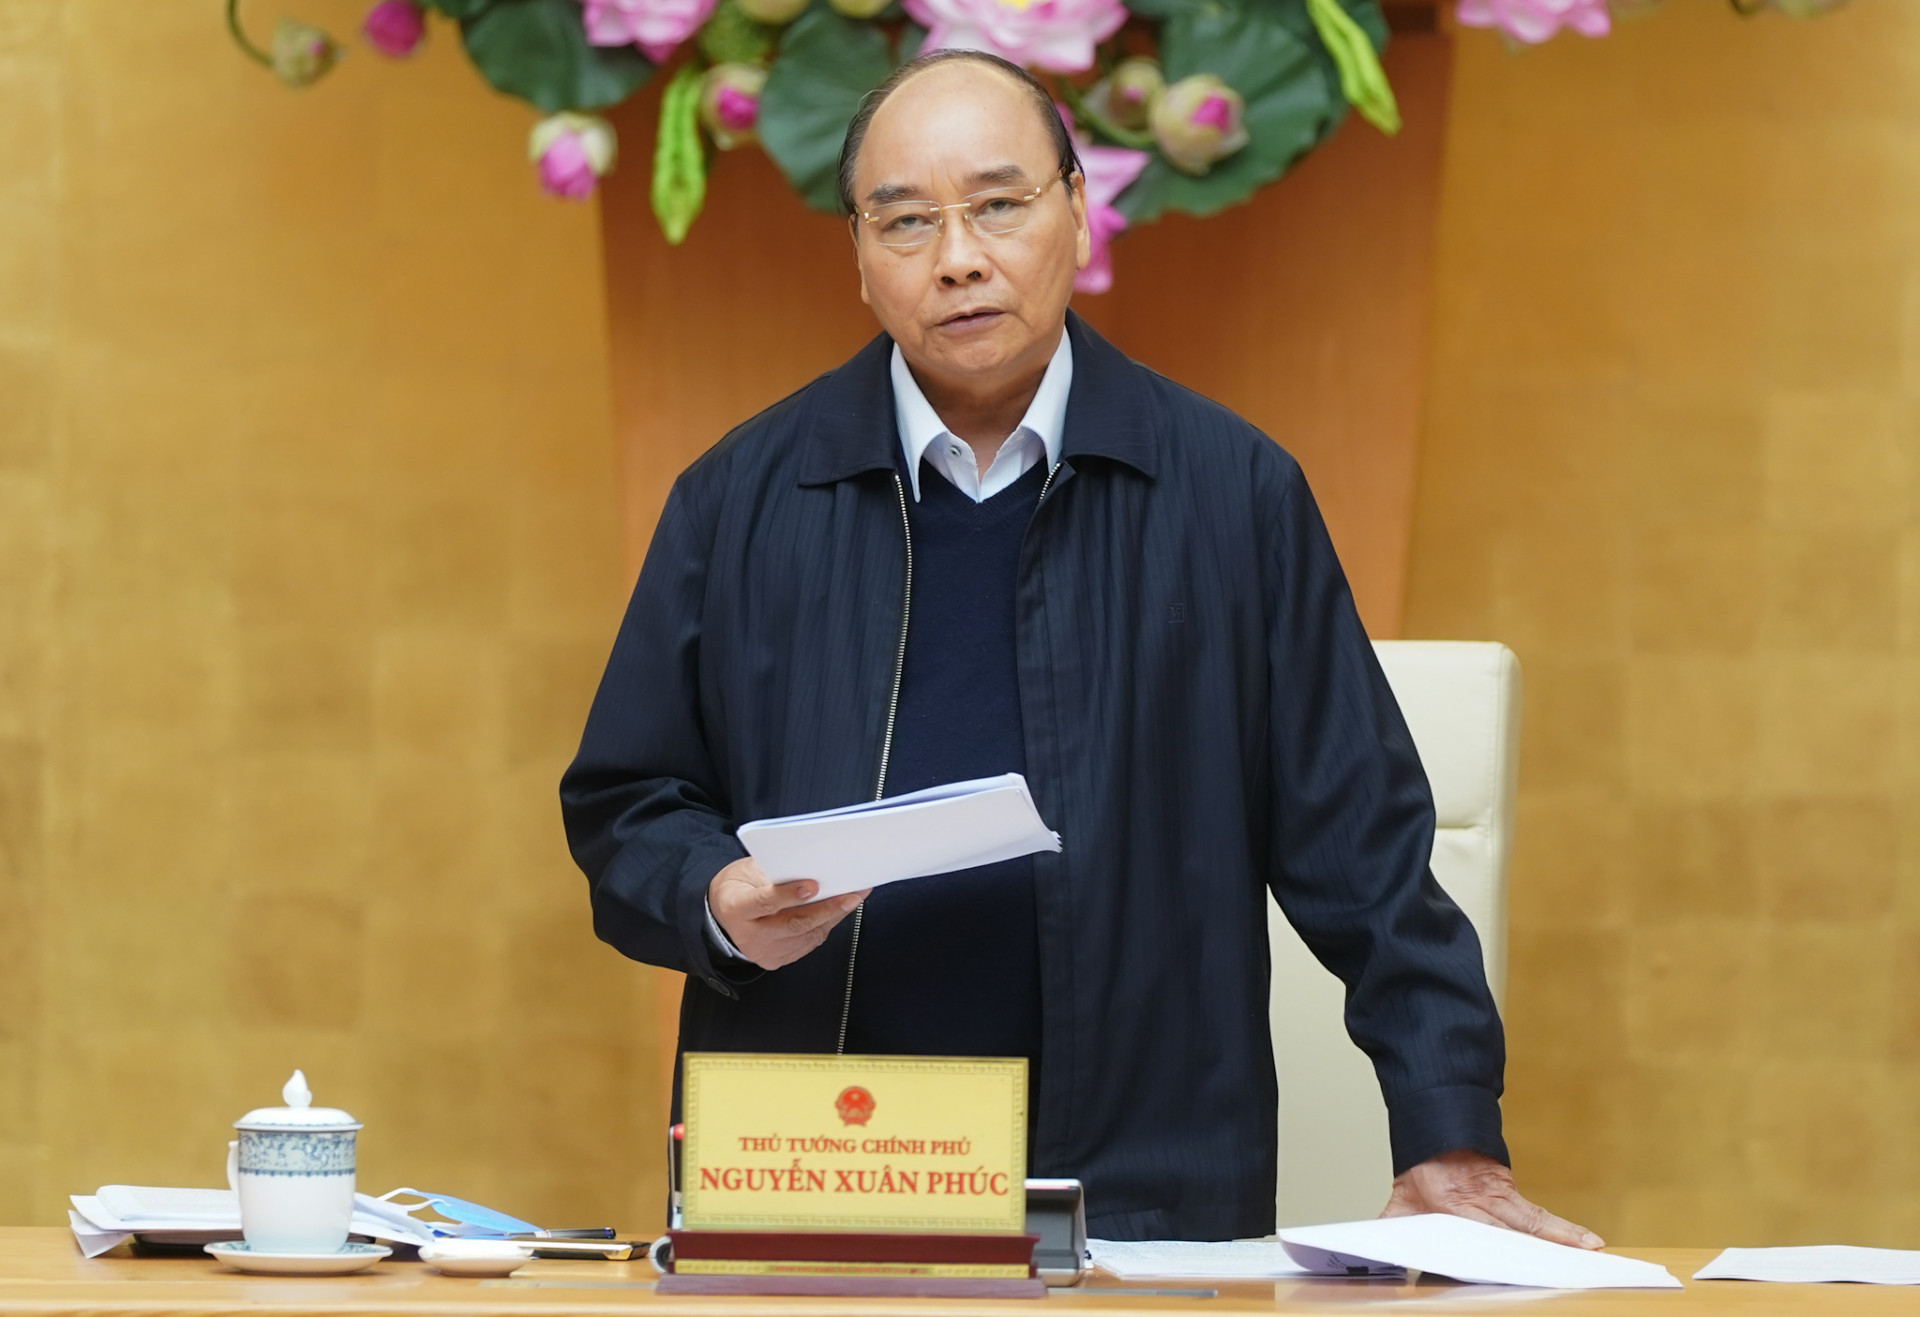 Thủ tướng Nguyễn Xuân Phúc yêu cầu việc chi trả hỗ trợ phải thuận lợi cho người lao động, người gặp khó khăn. Ảnh: VGP/Quang Hiếu